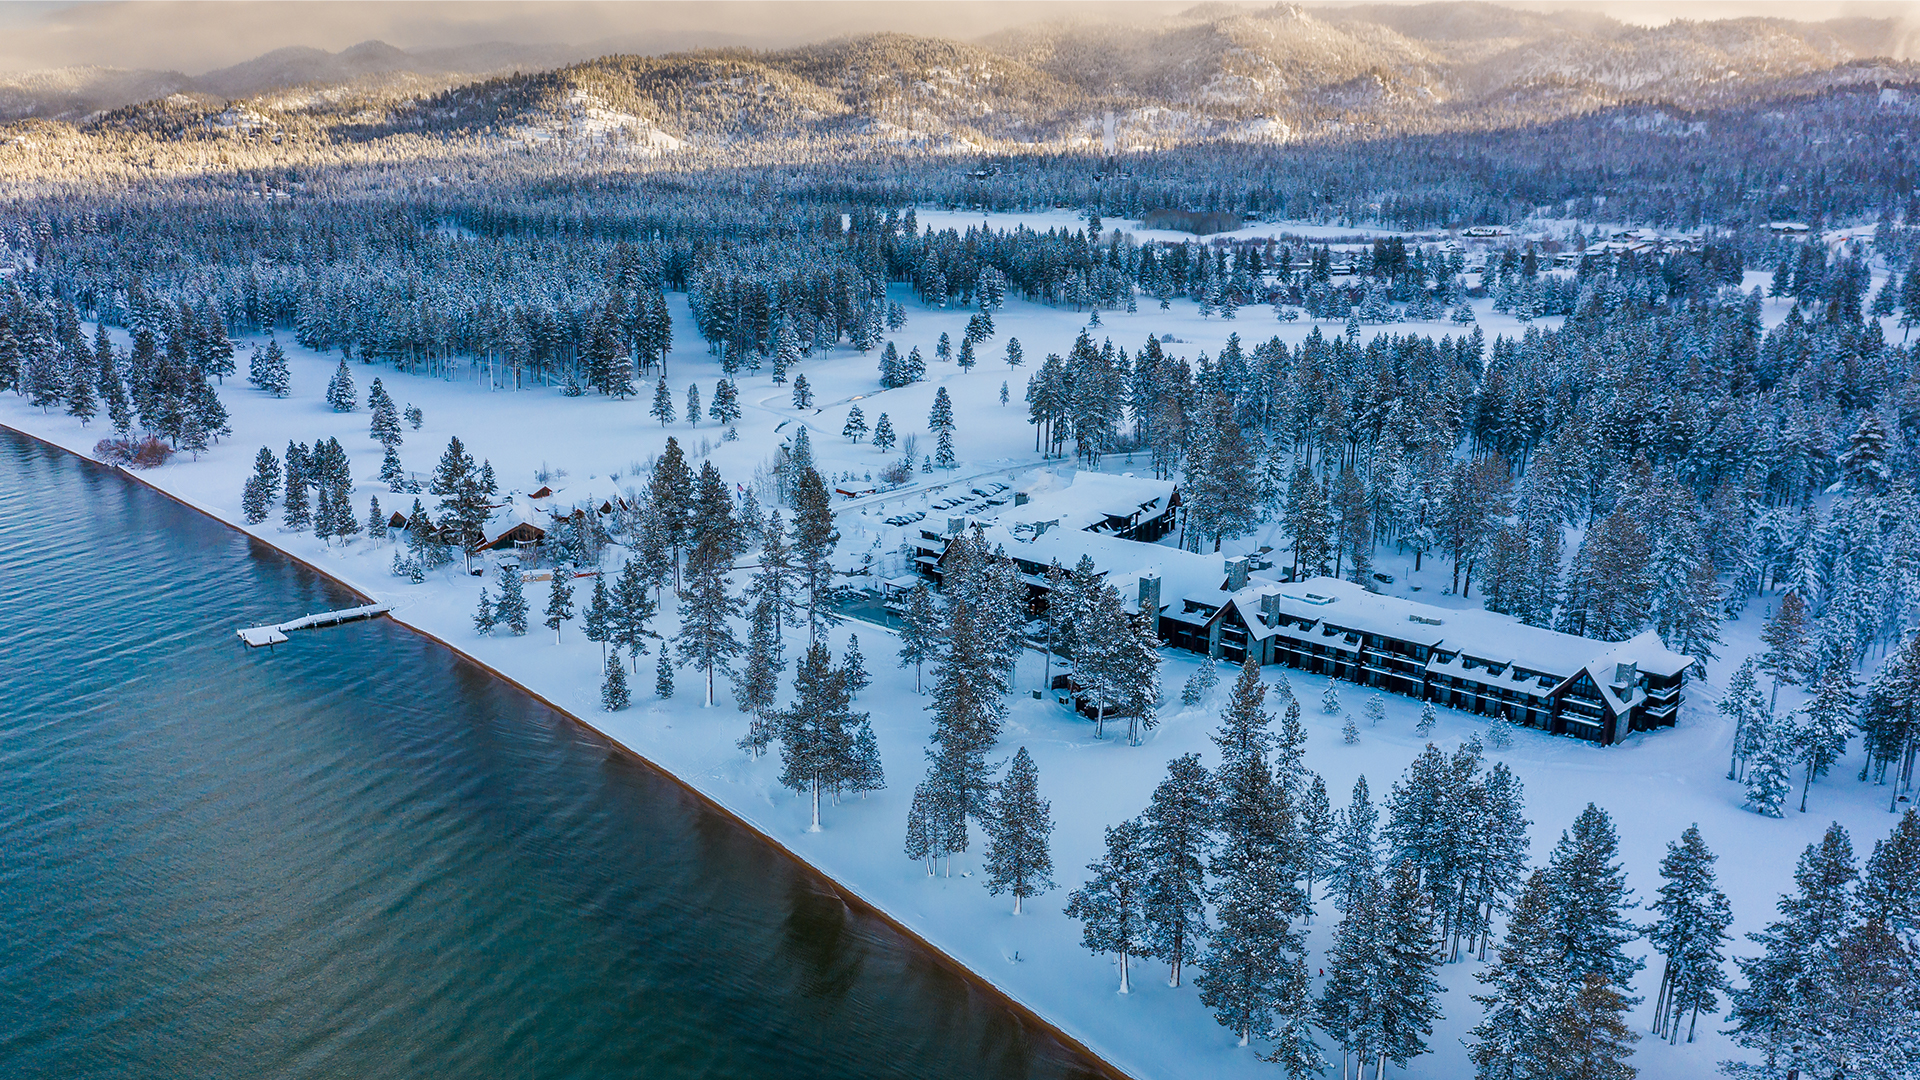 edgewood tahoe resort winter aerial view